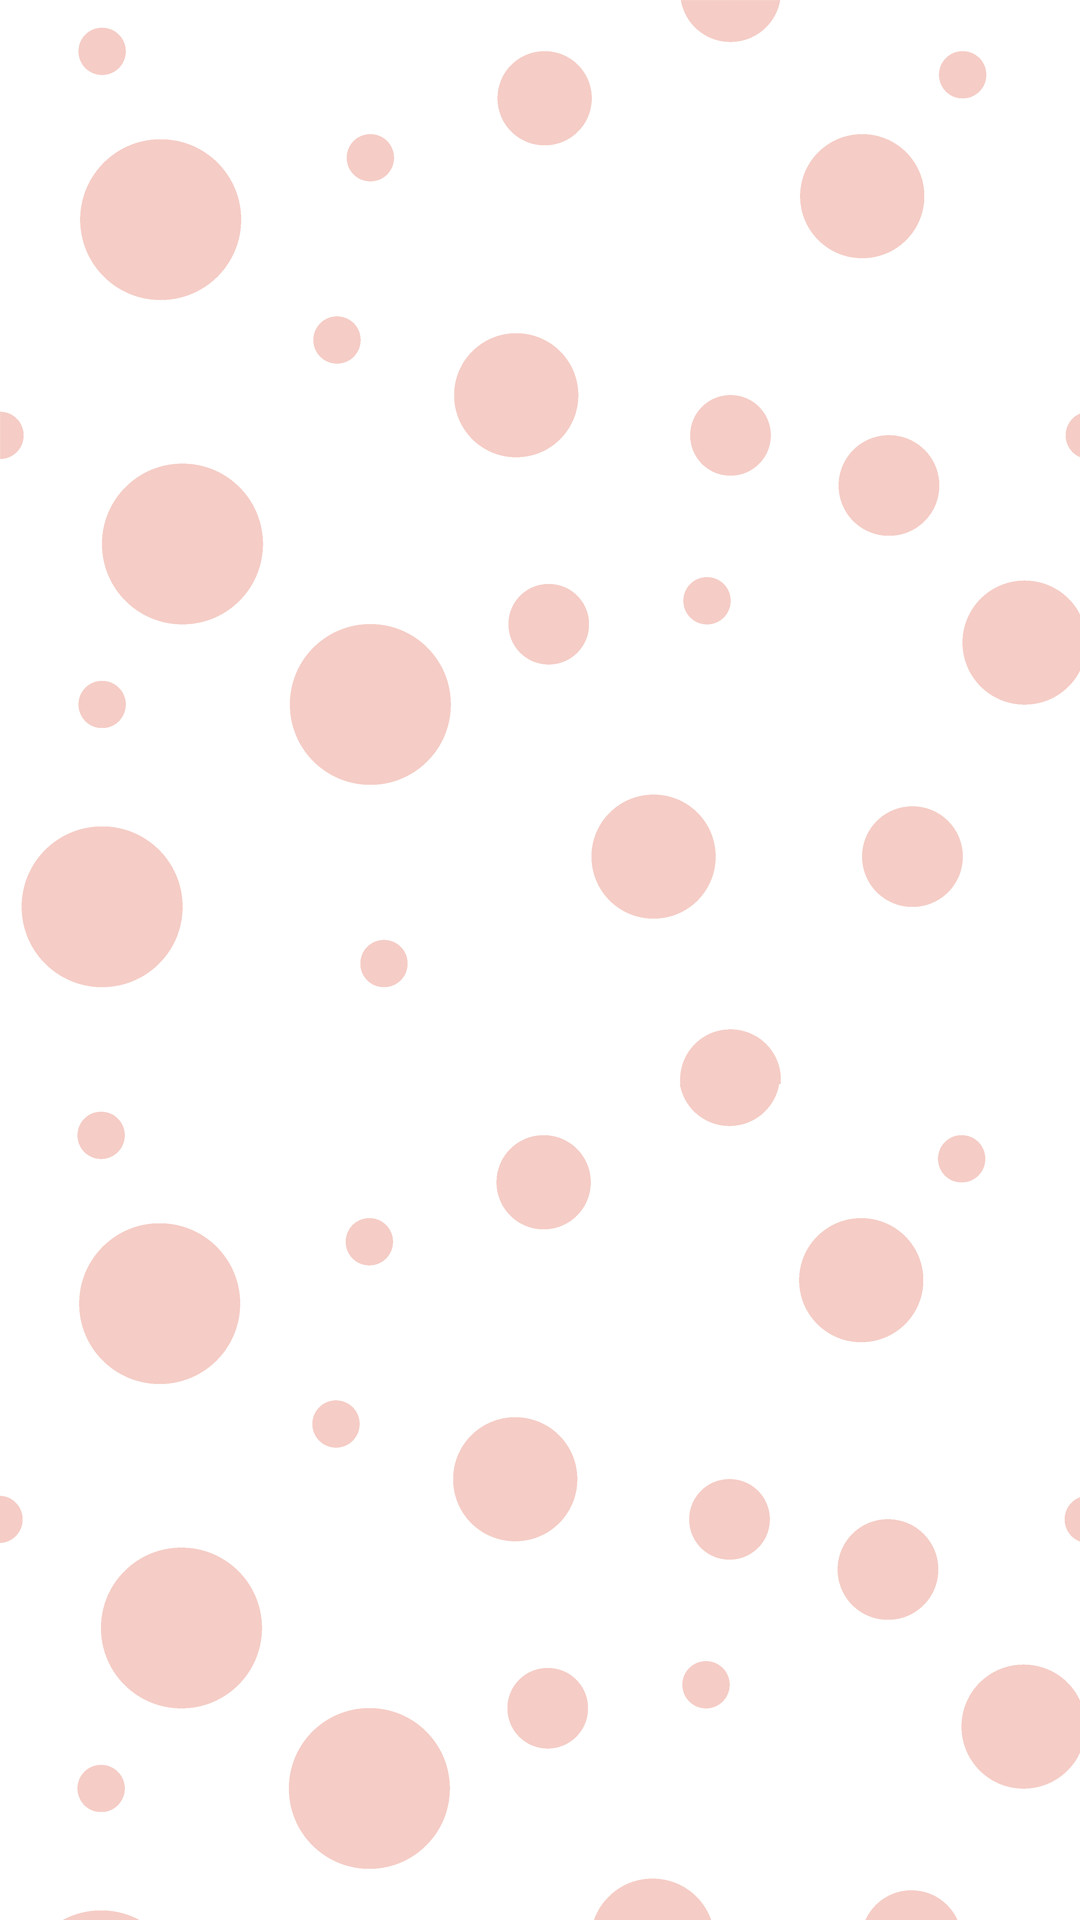 1080x1920 Pink Dots 1080 x 1920 FHD Wallpaper Pink Dots 1080 x 1920 FHD Wallpaper